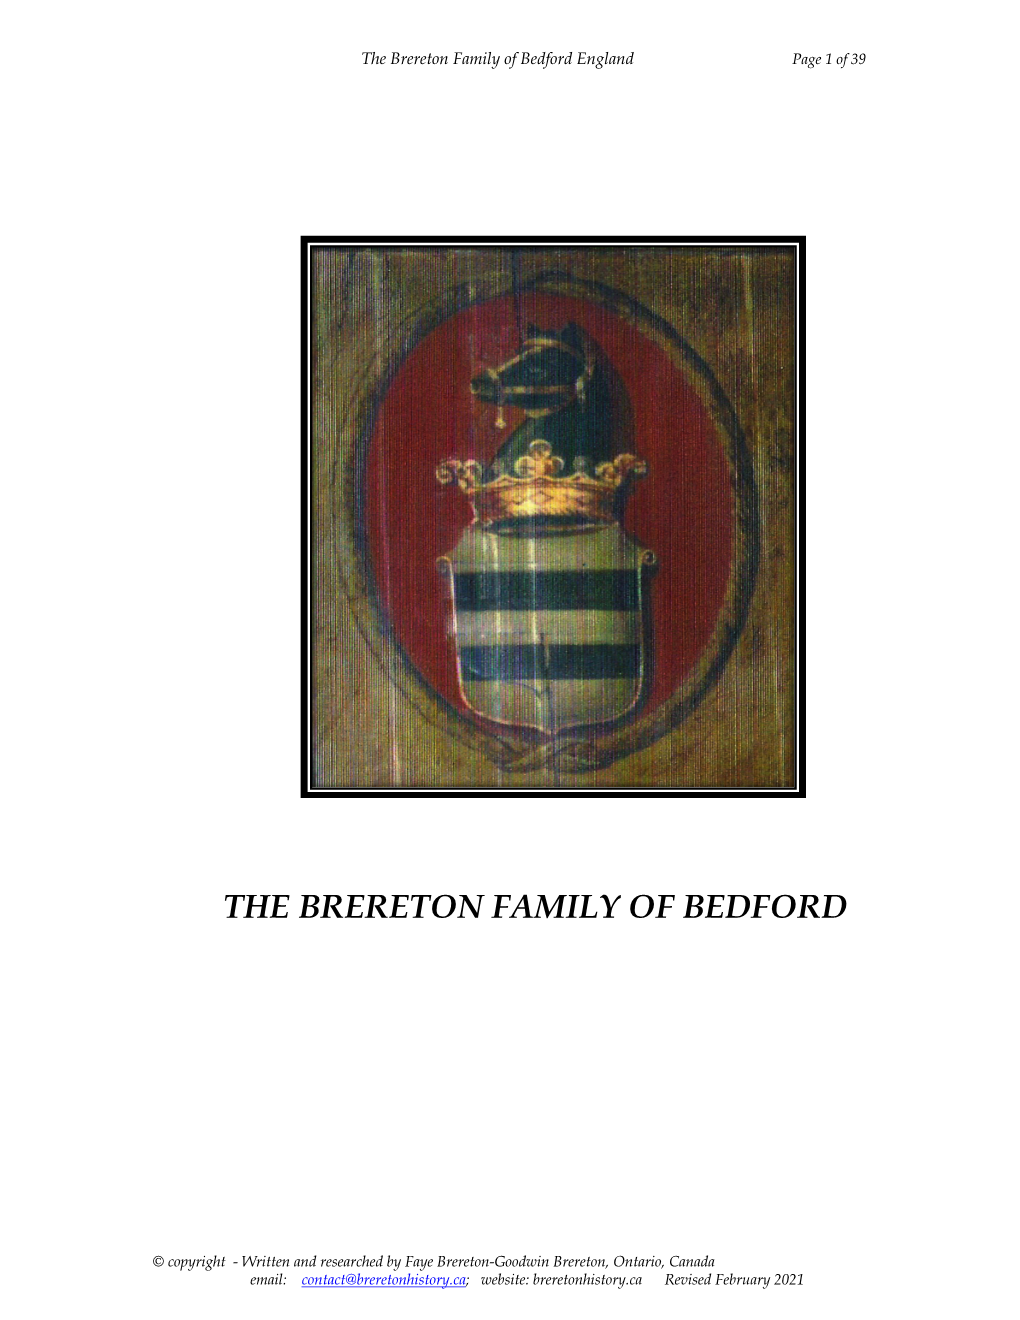 2021 Breretons of Bedford